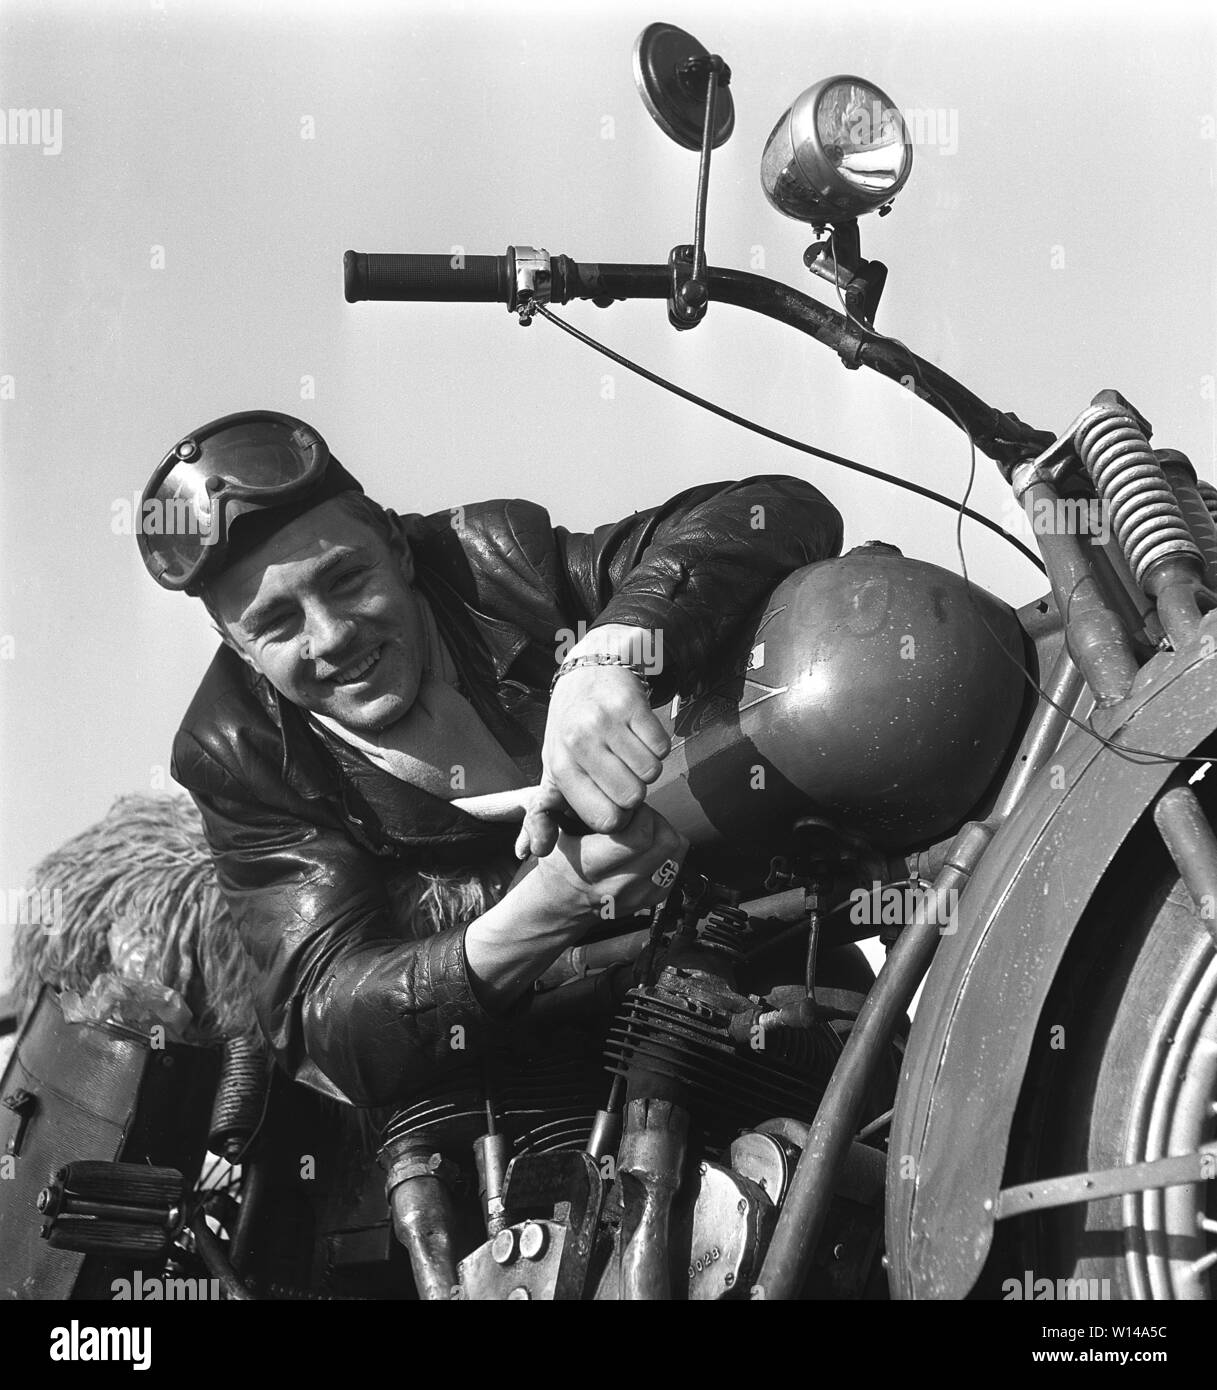 Motociclista negli anni cinquanta. Un giovane uomo che indossa occhiali e un cappuccio in pelle dalla sua moto. Il motociclo è realizzato dalla società americana Excelsior di Chicago e il modello è Super X 1925, e fu Americhe prima motocicletta con un motore v-twin. La Svezia degli anni cinquanta ref 10-09-11 Foto Stock